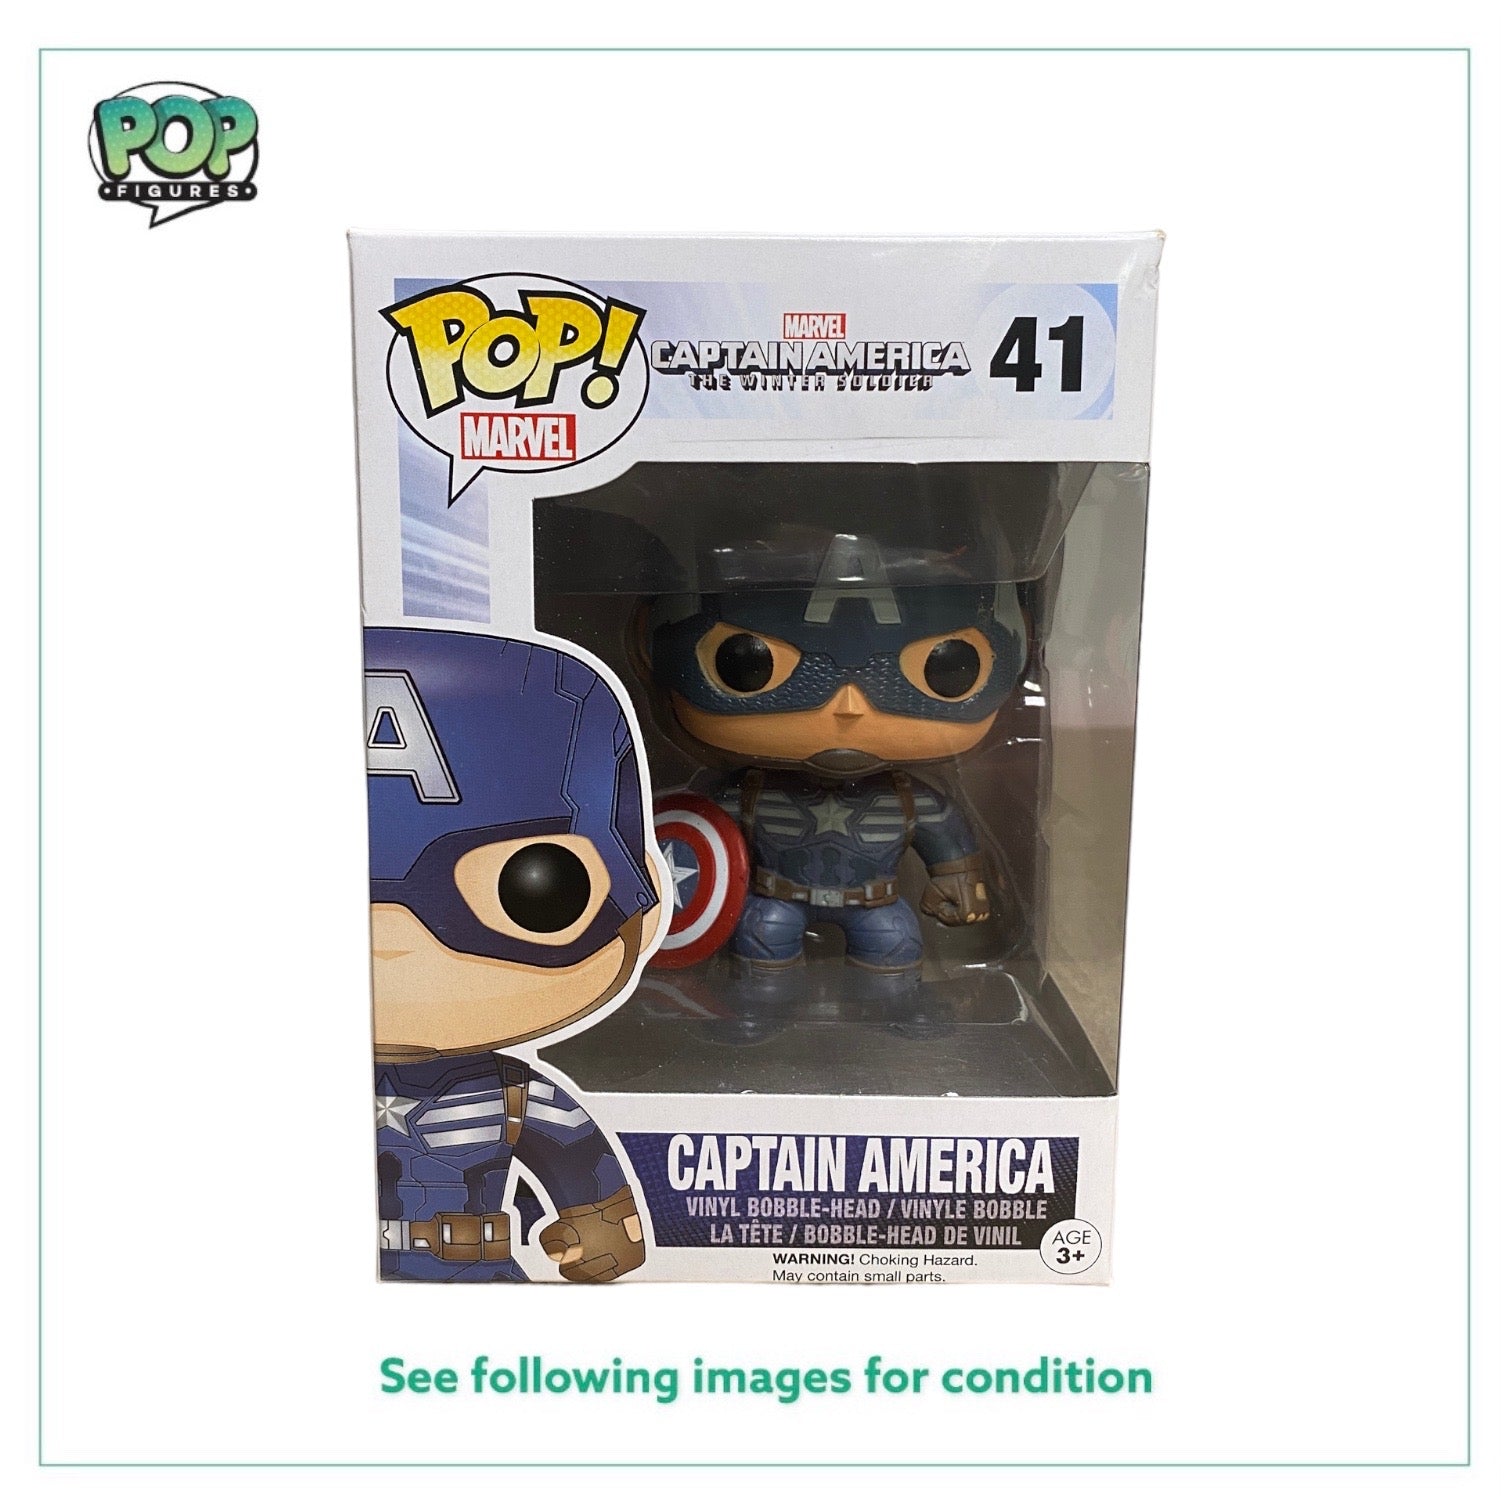 Captain America #41 Funko Pop! - Captain America The Winter Soldier - 2014 Pop! - Condition 7.5/10